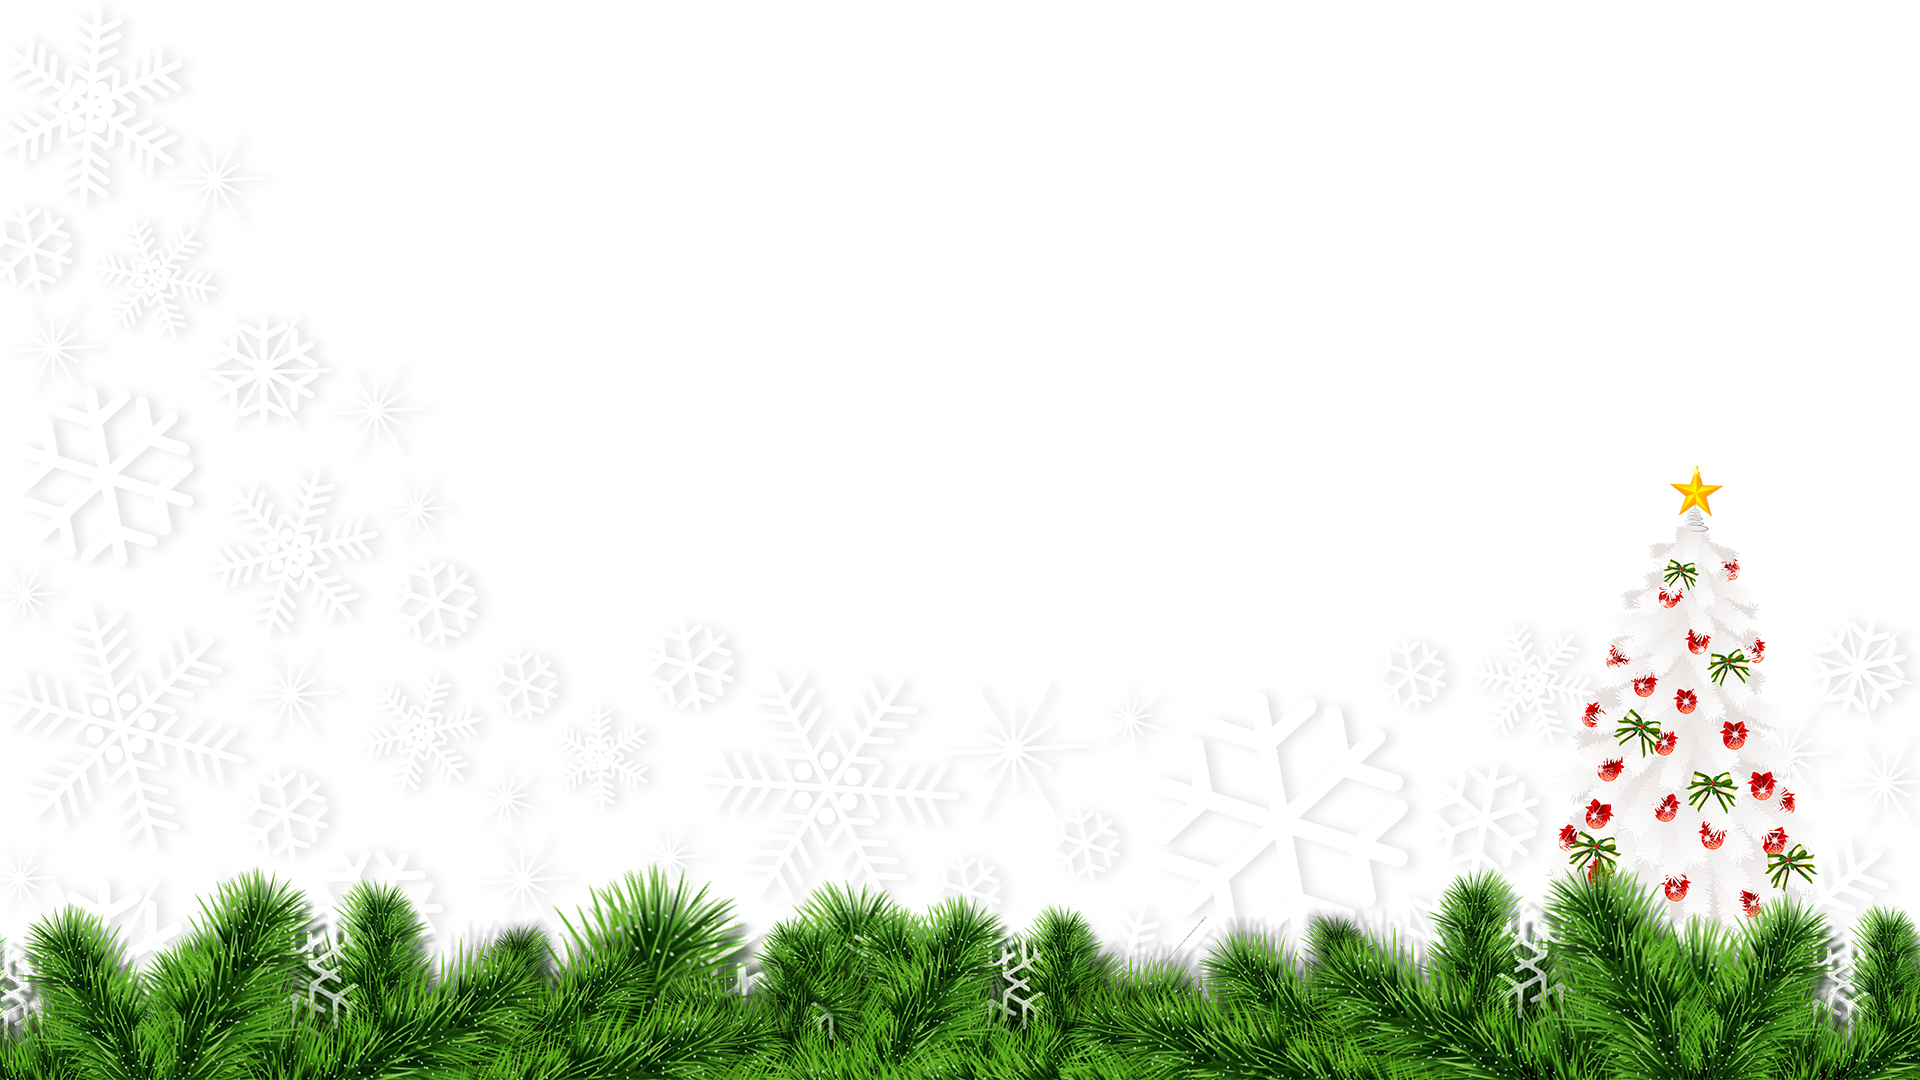 雪花、松枝、圣诞树 圣诞节高清背景